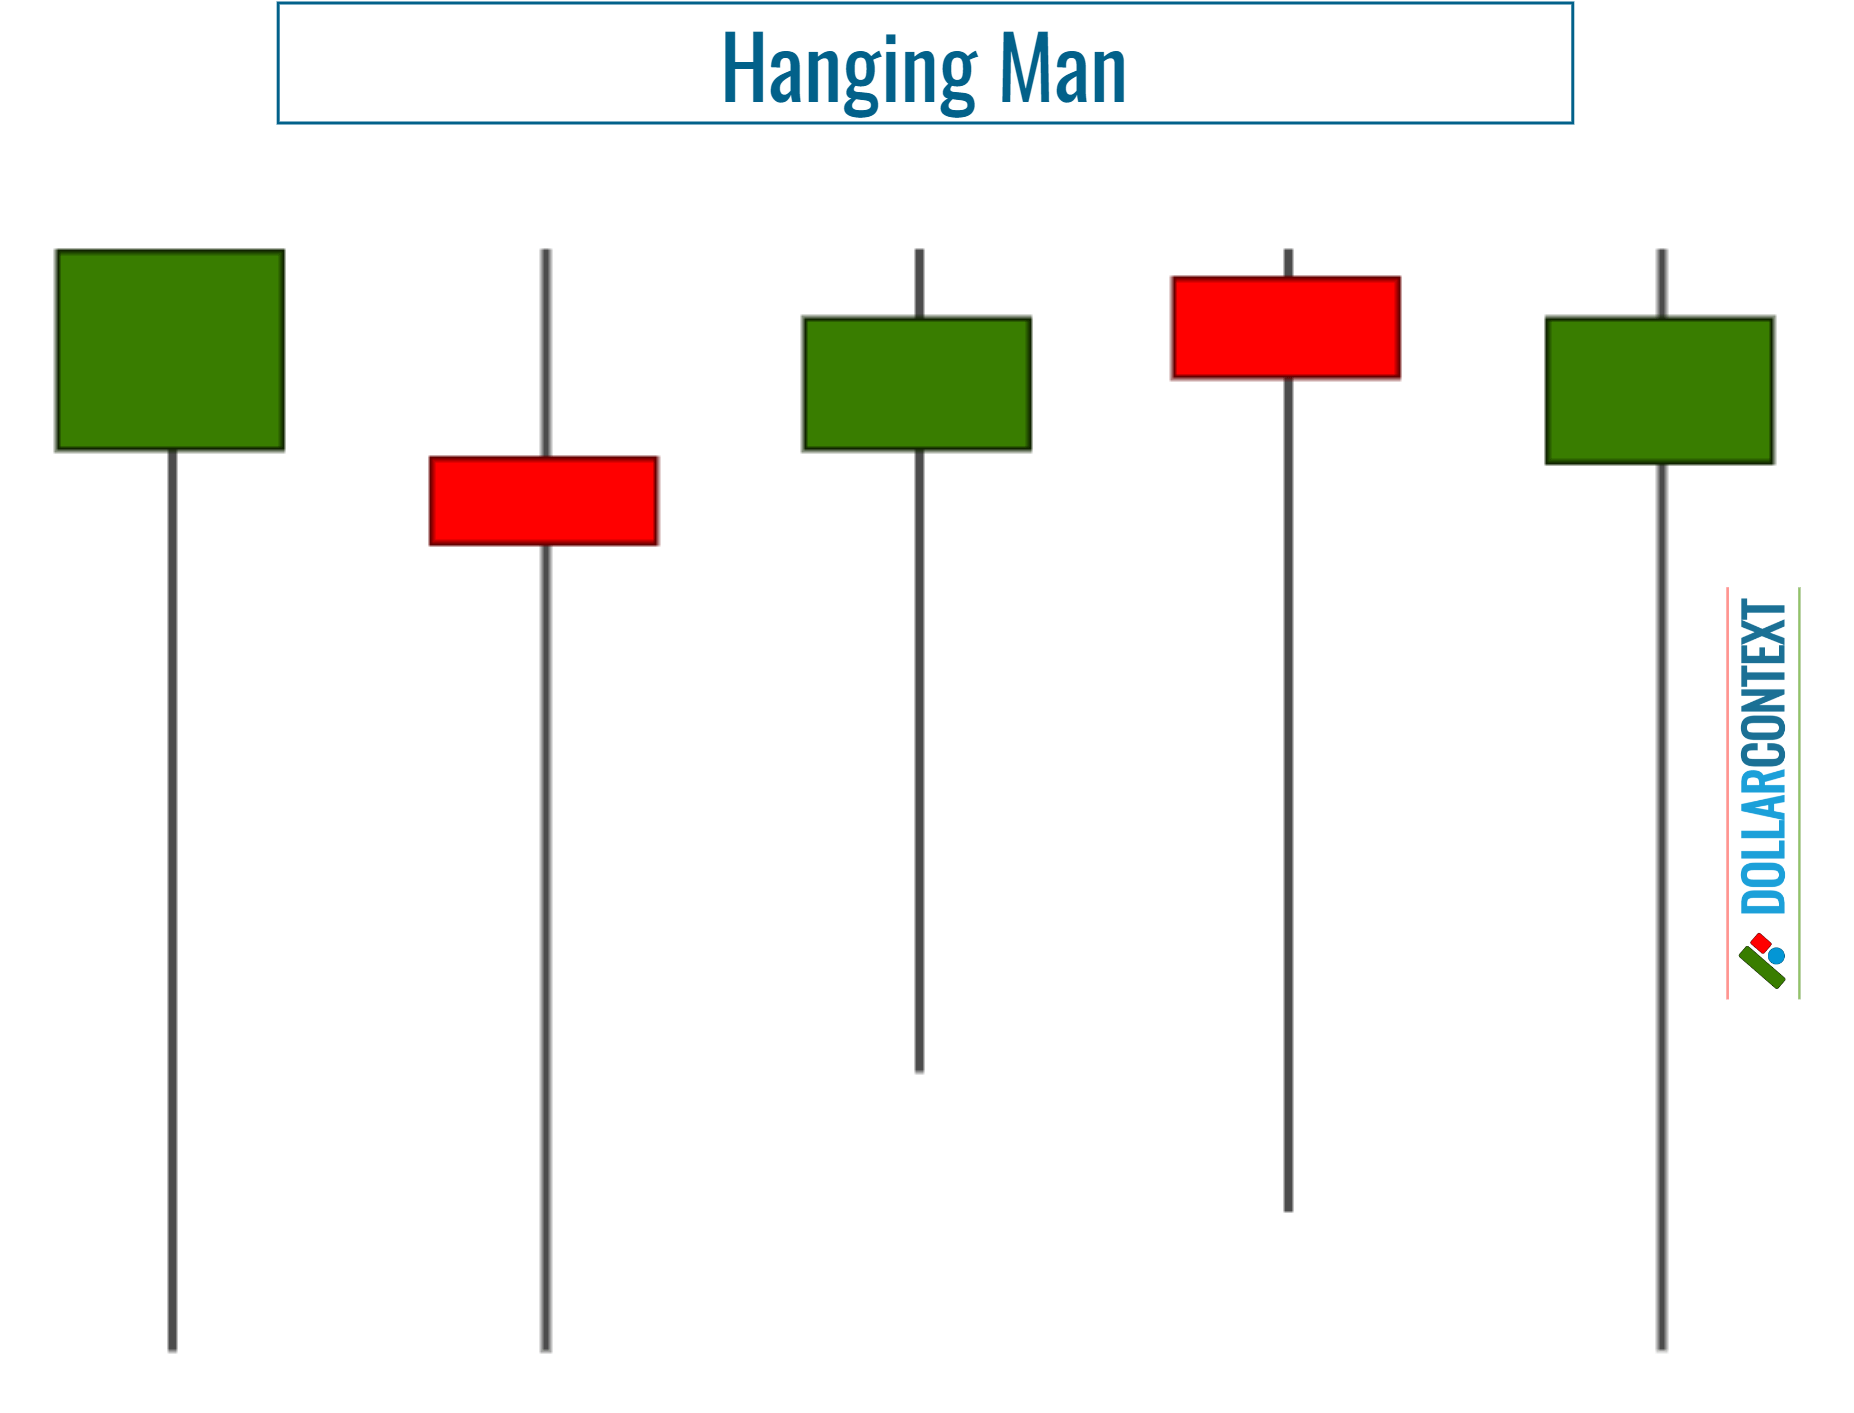 Doji vs. Hanging Man